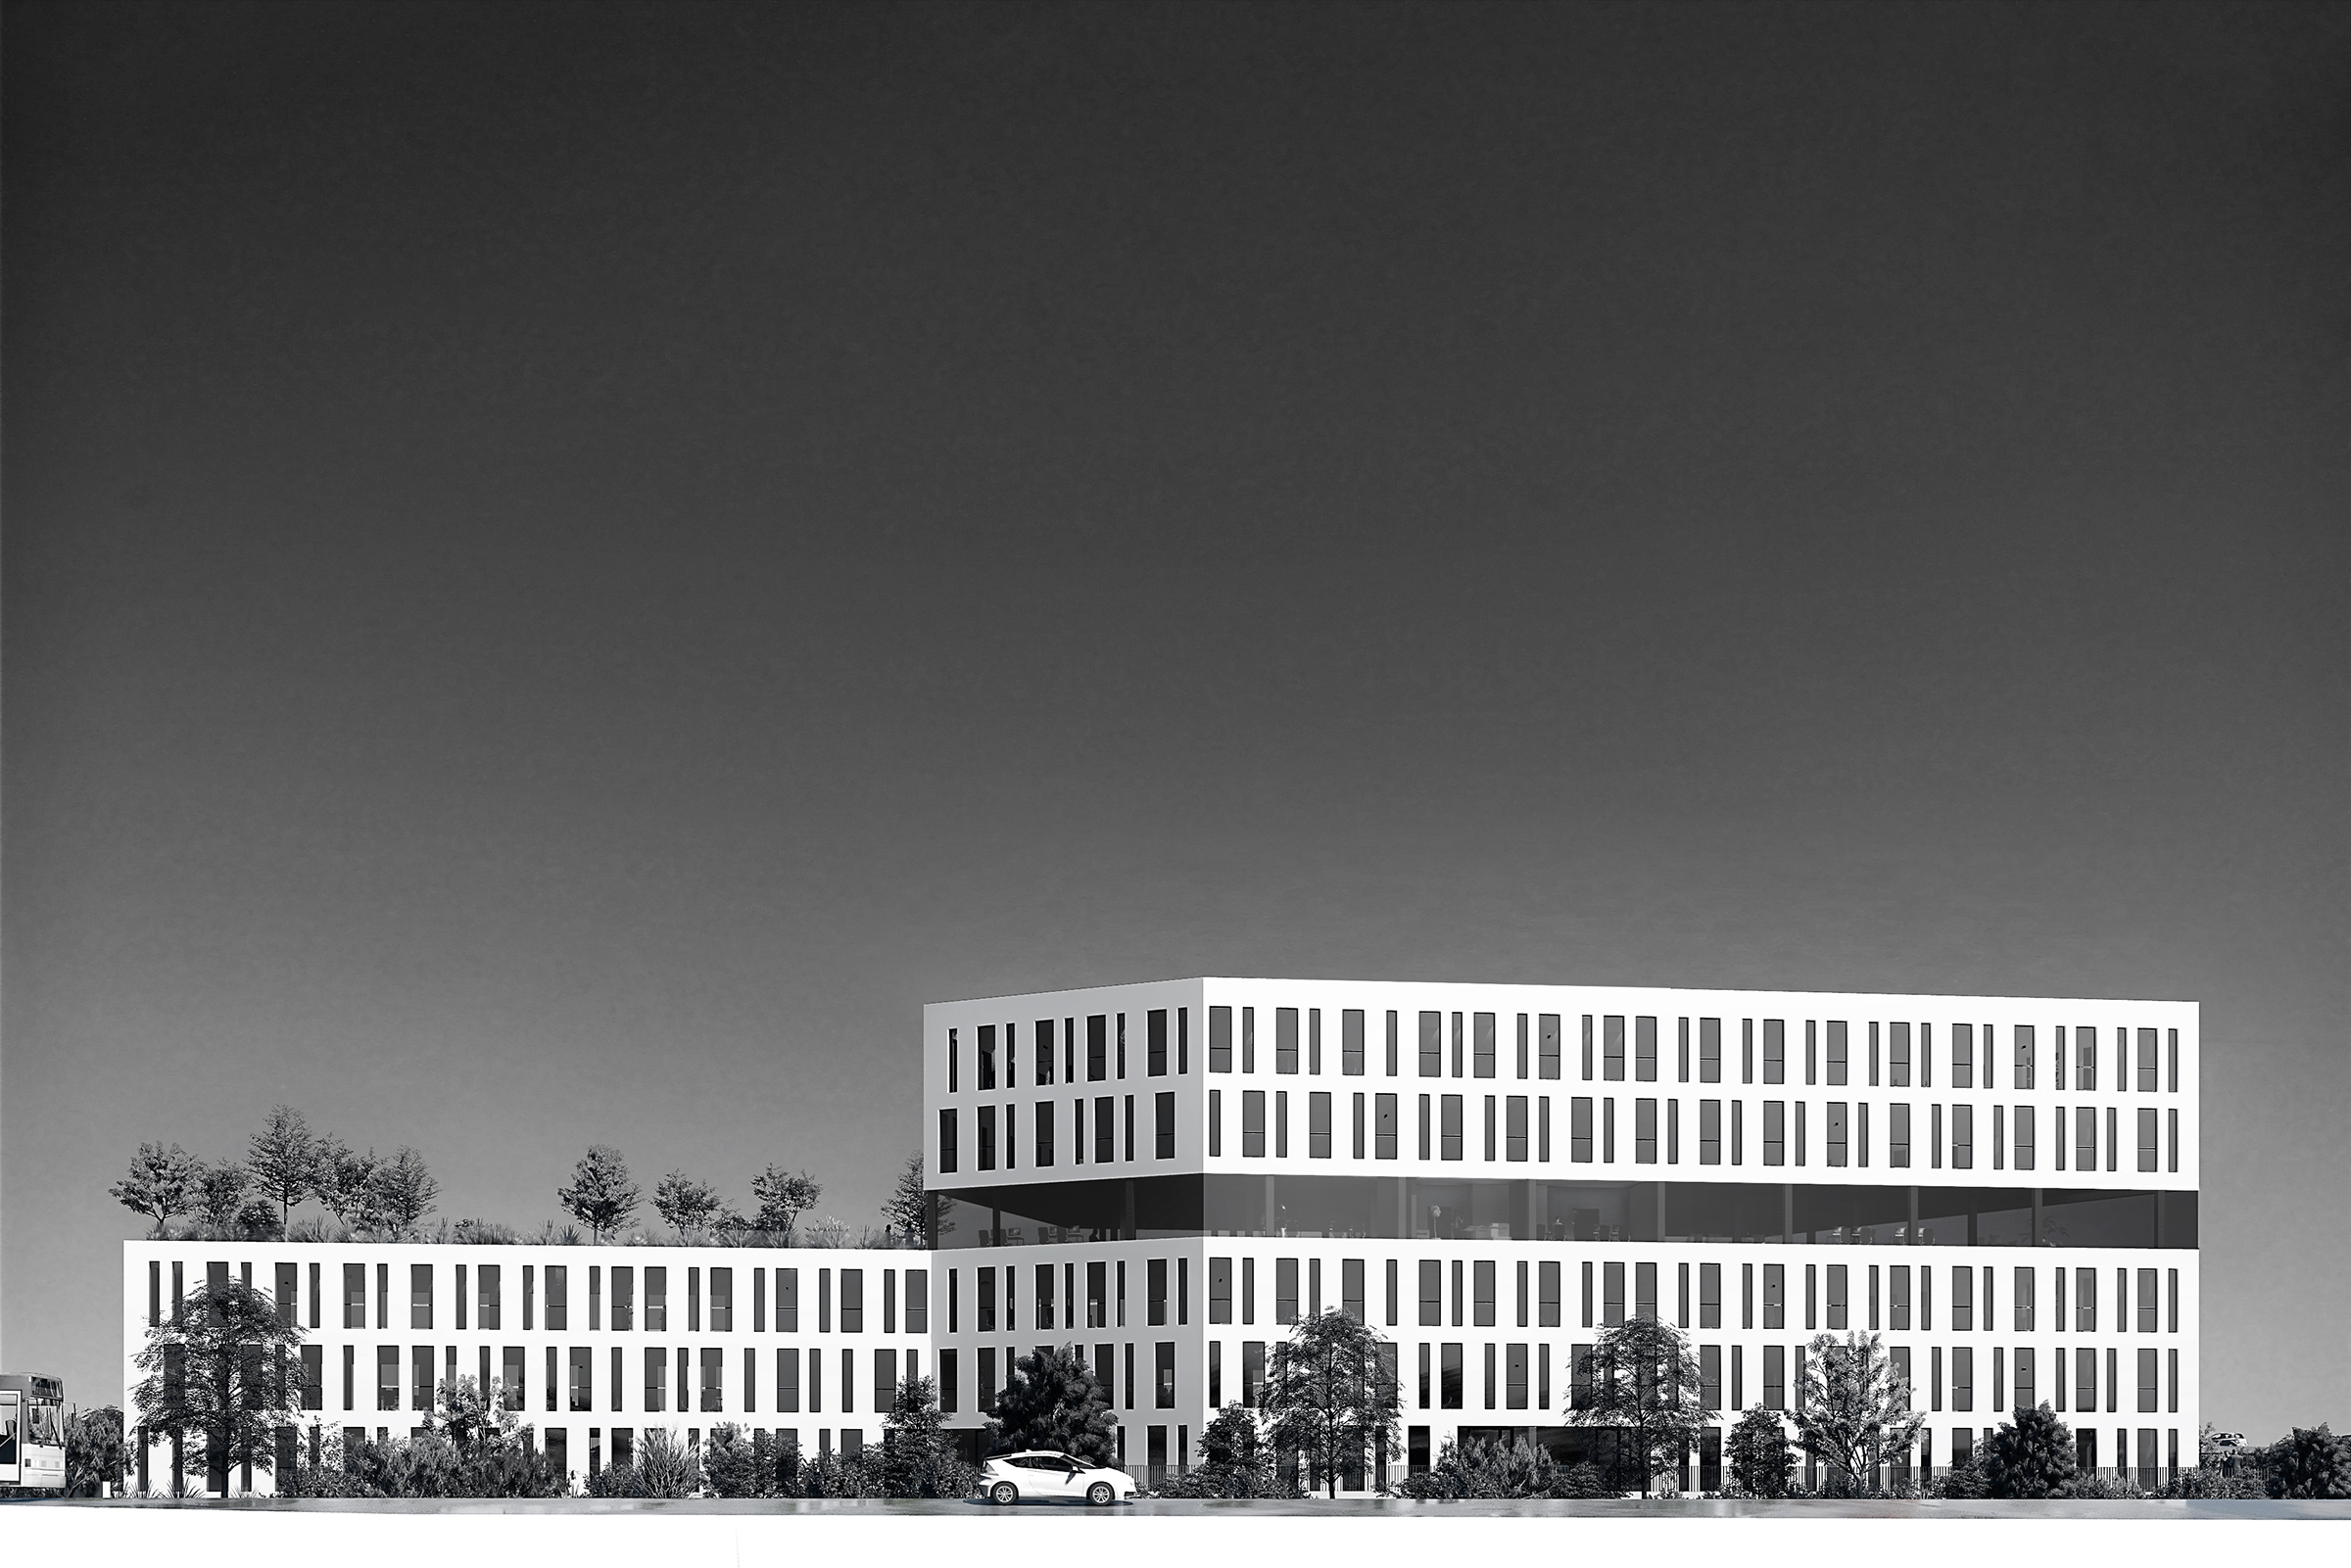 Perspective noir et blanc du bâtiment, vue sur la toiture terrasse prolongée par un intérieur vitré surplombé par deux derniers étages